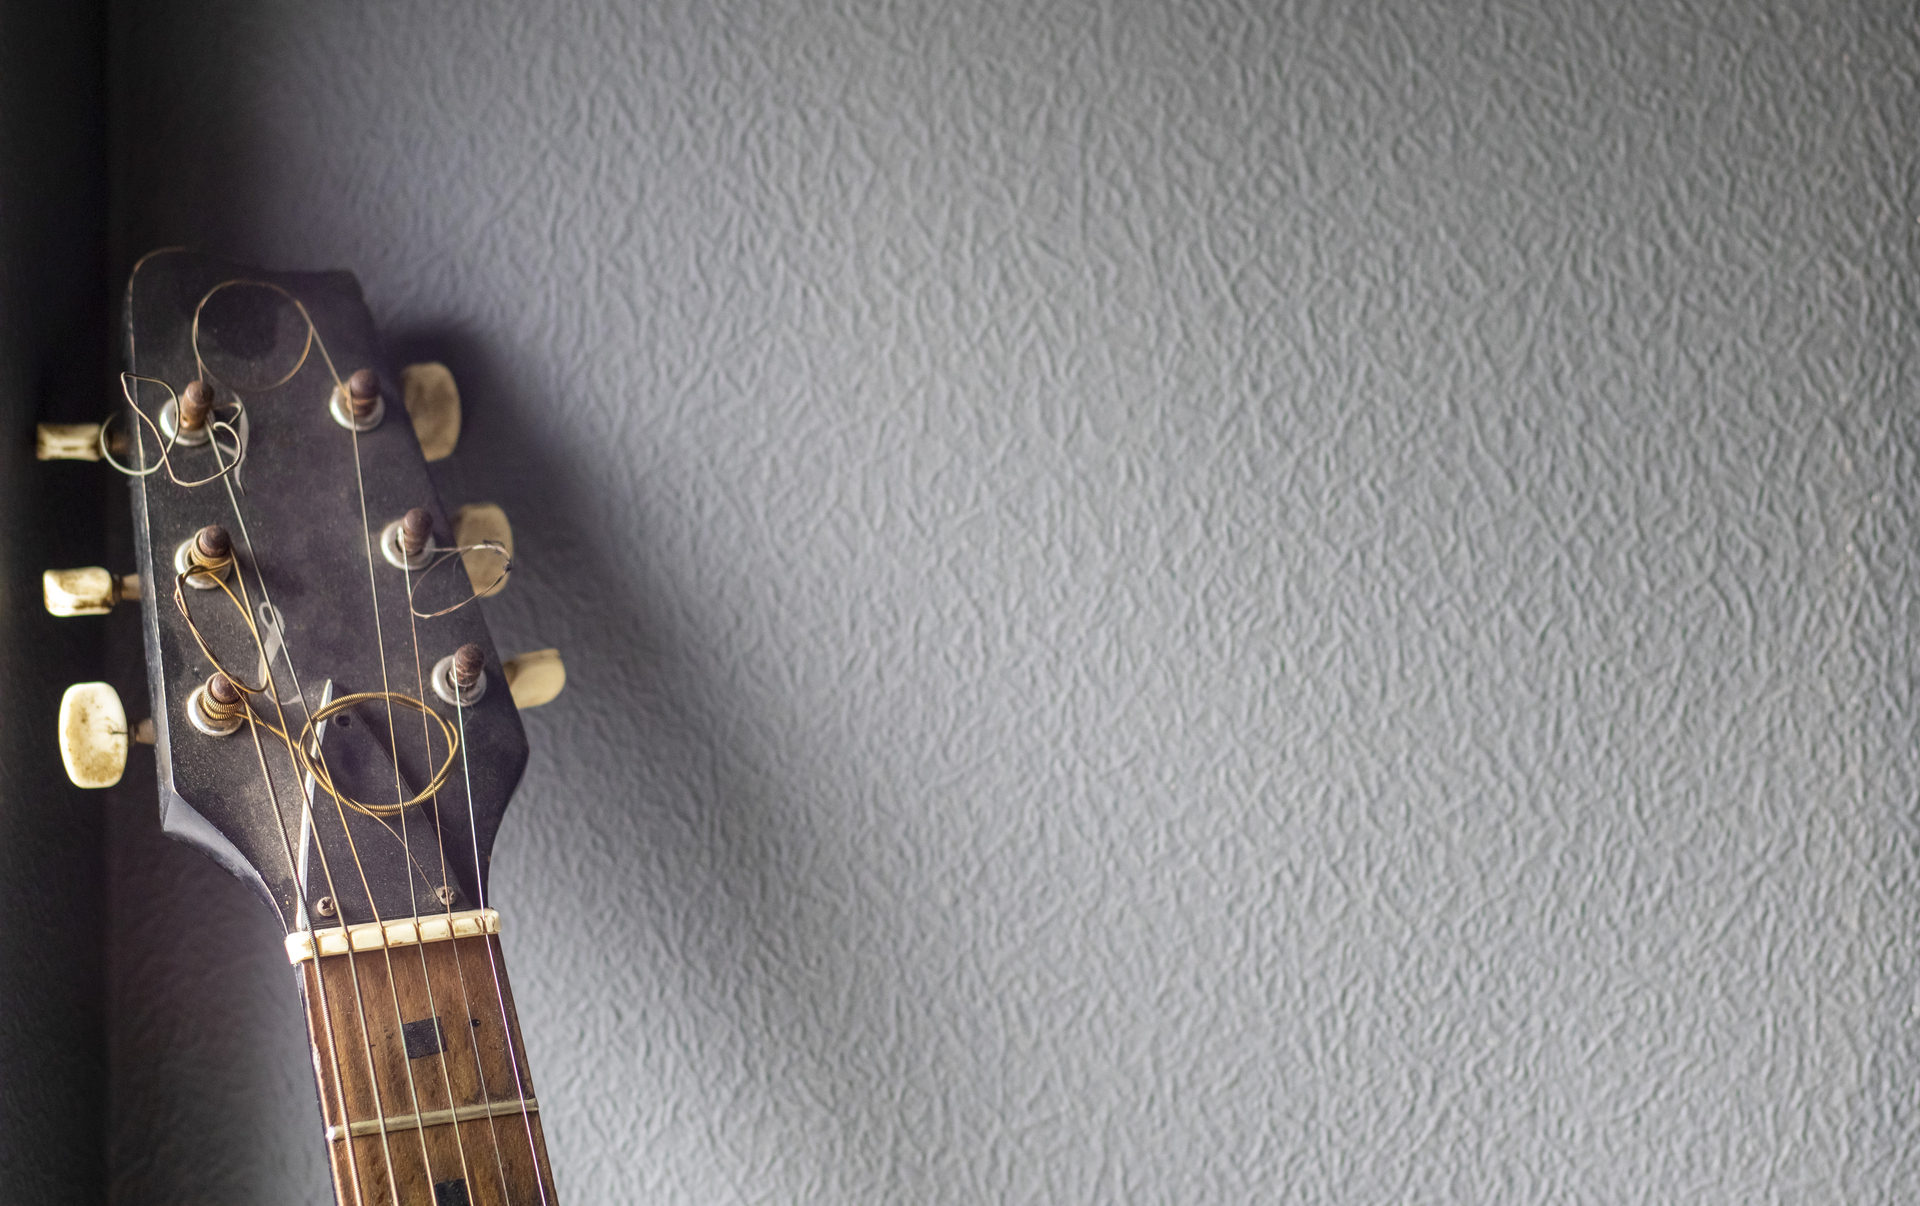 Gitara oparta o wygłuszoną wcześniej białą ścianę